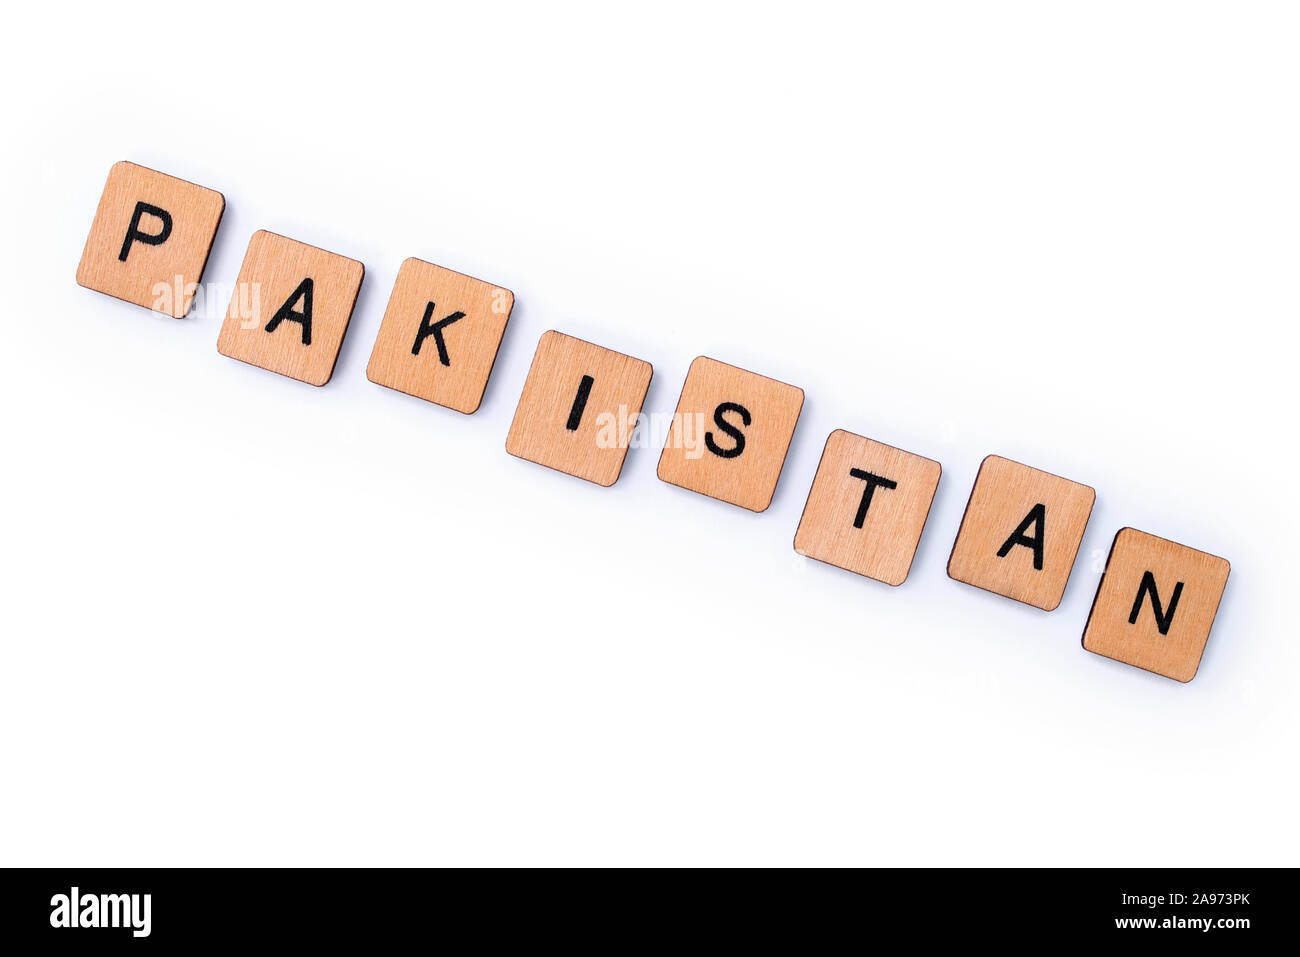 Le mot PAKISTAN, de l'épeautre avec des lettres sur un fond blanc. Banque D'Images